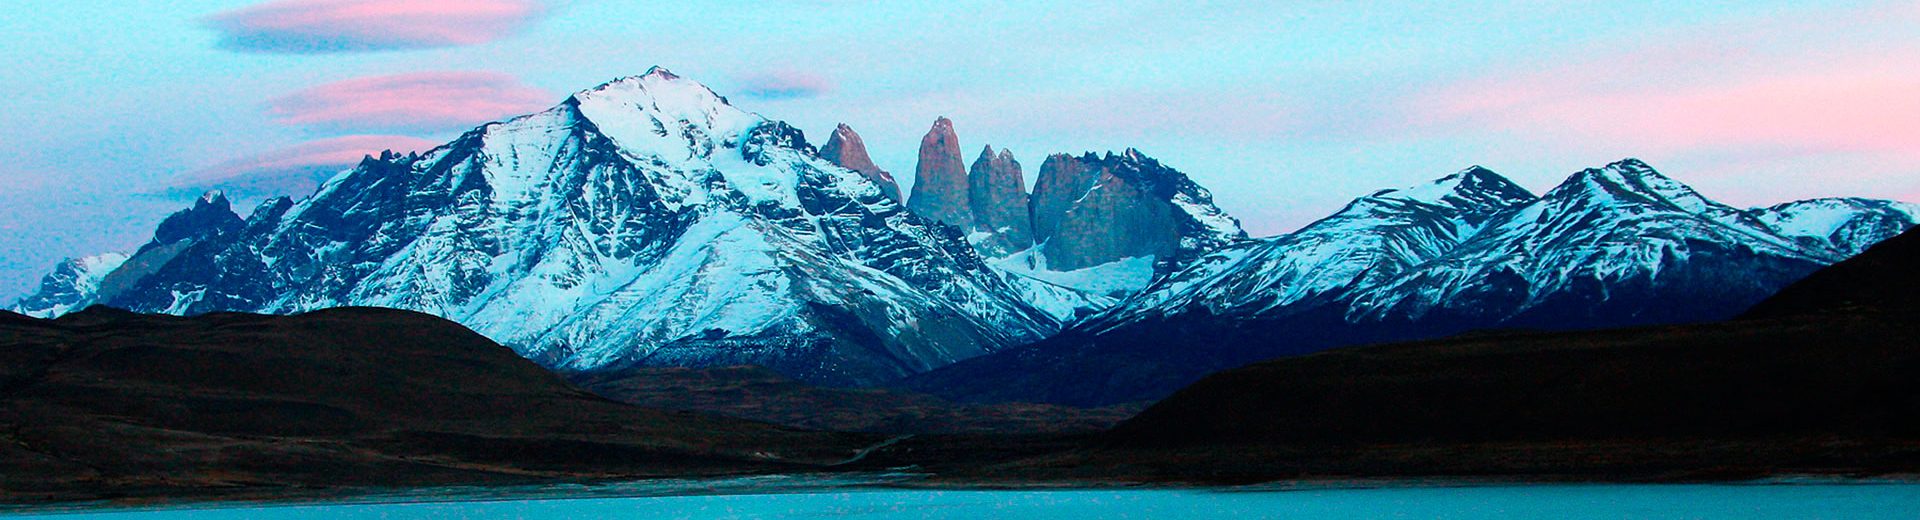 Uma das belas paisagens encontradas no Circuito W de Torres del Paine